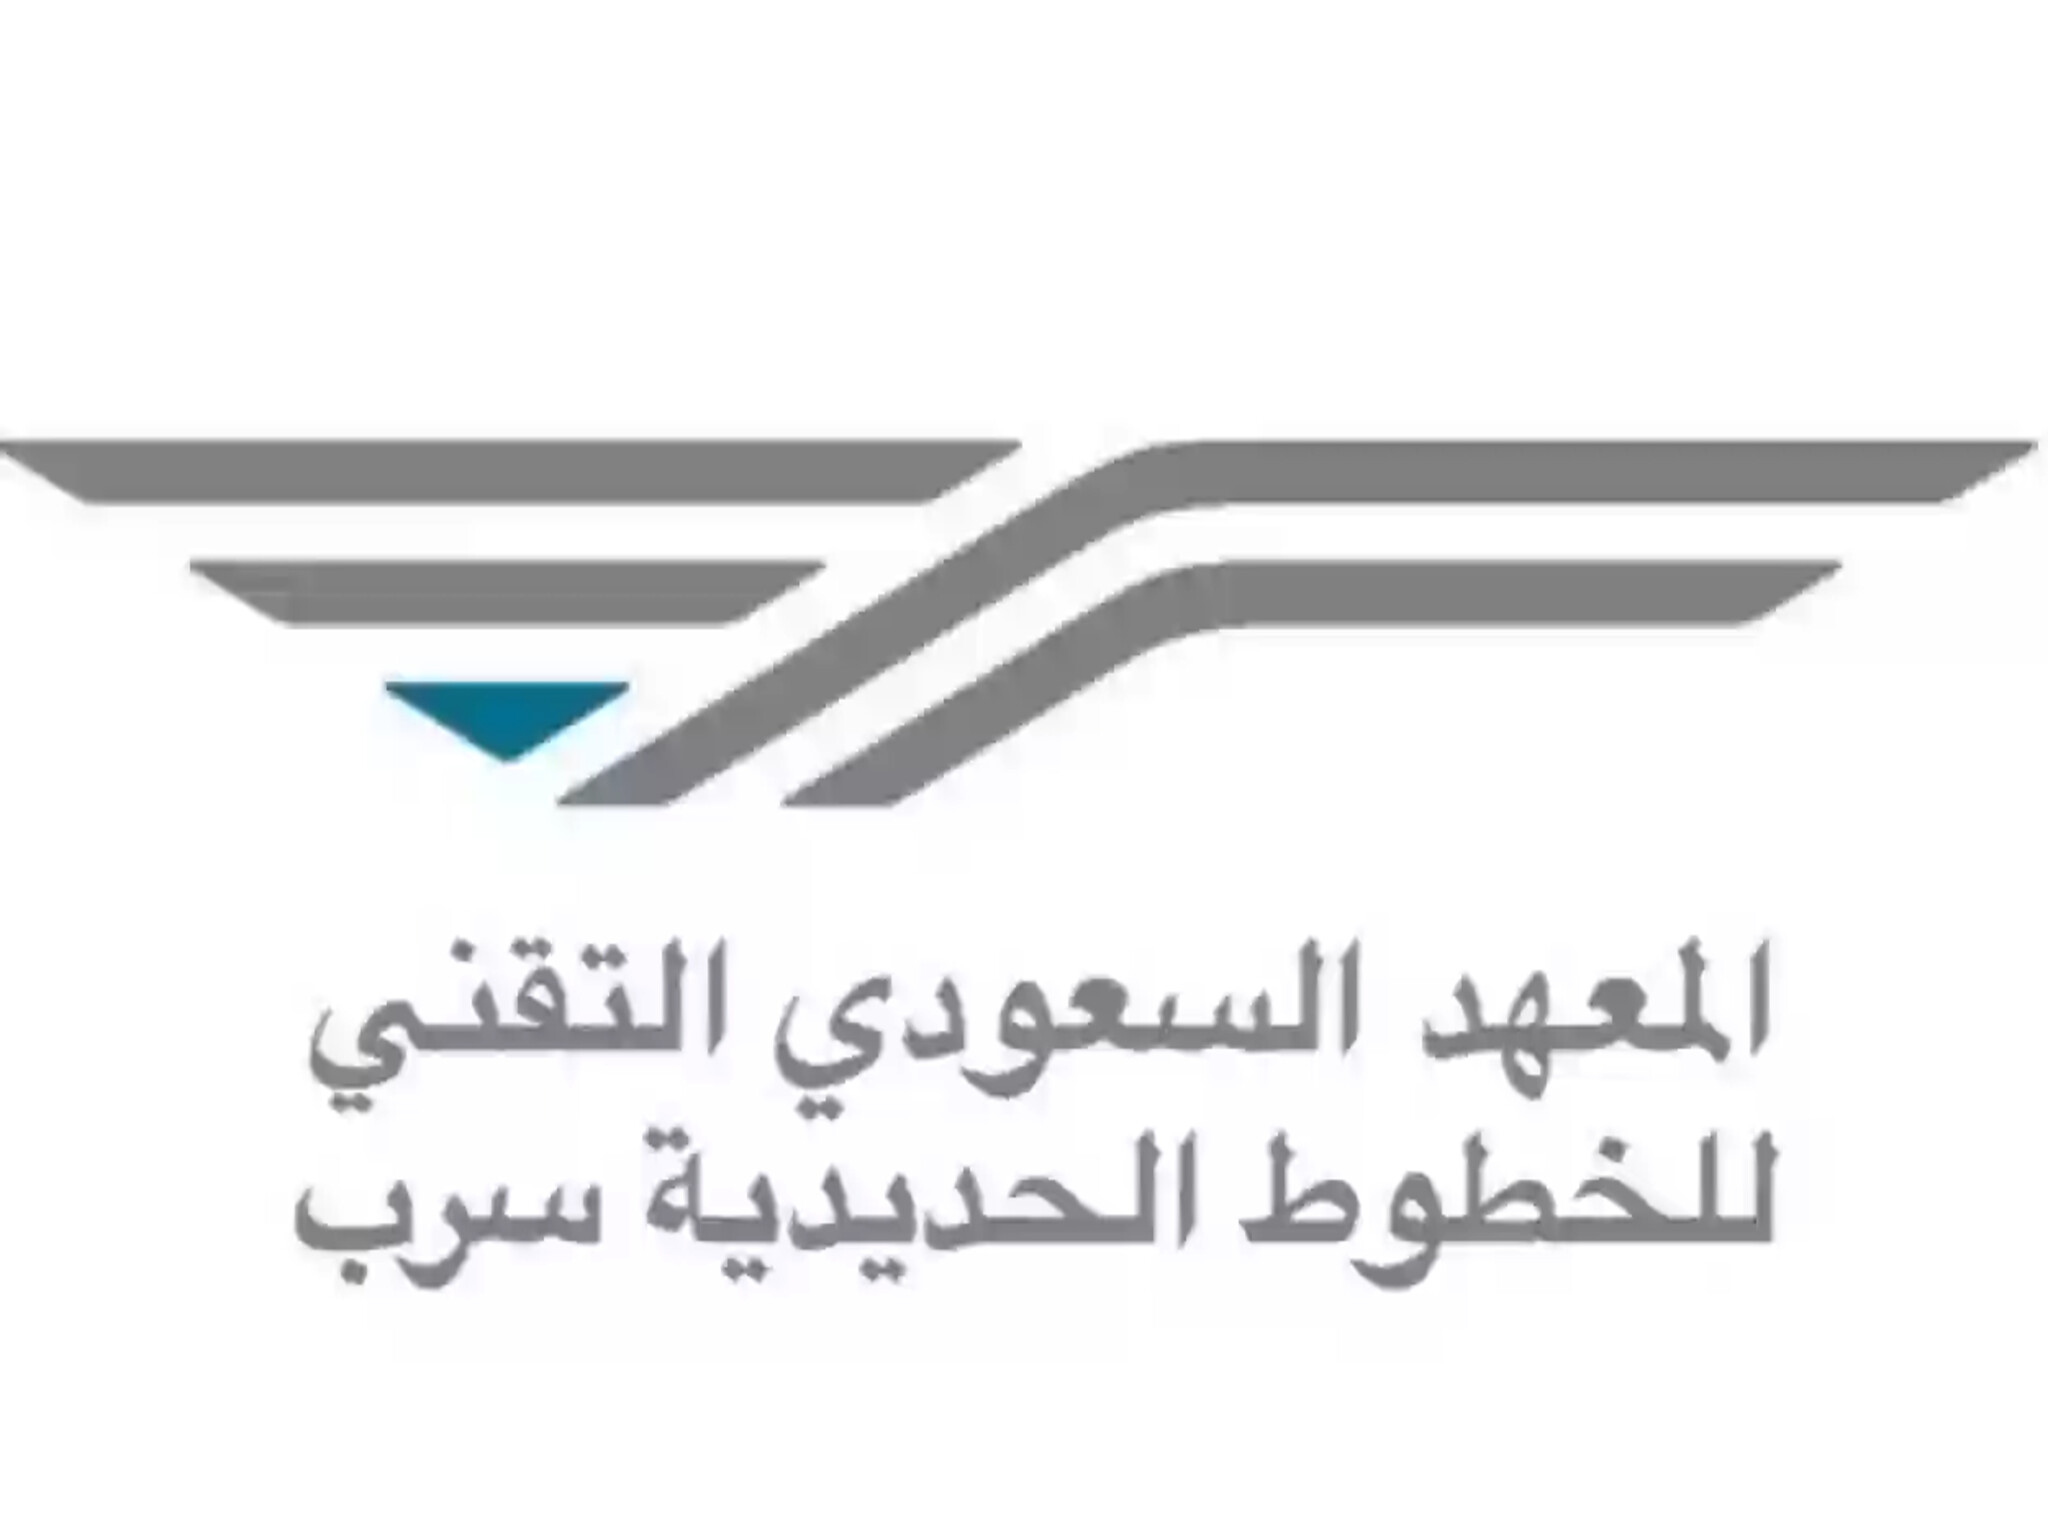 المعهد السعودي التقني يعلن رسميًا بدء التسجيل في برنامج التدريب على رأس العمل 